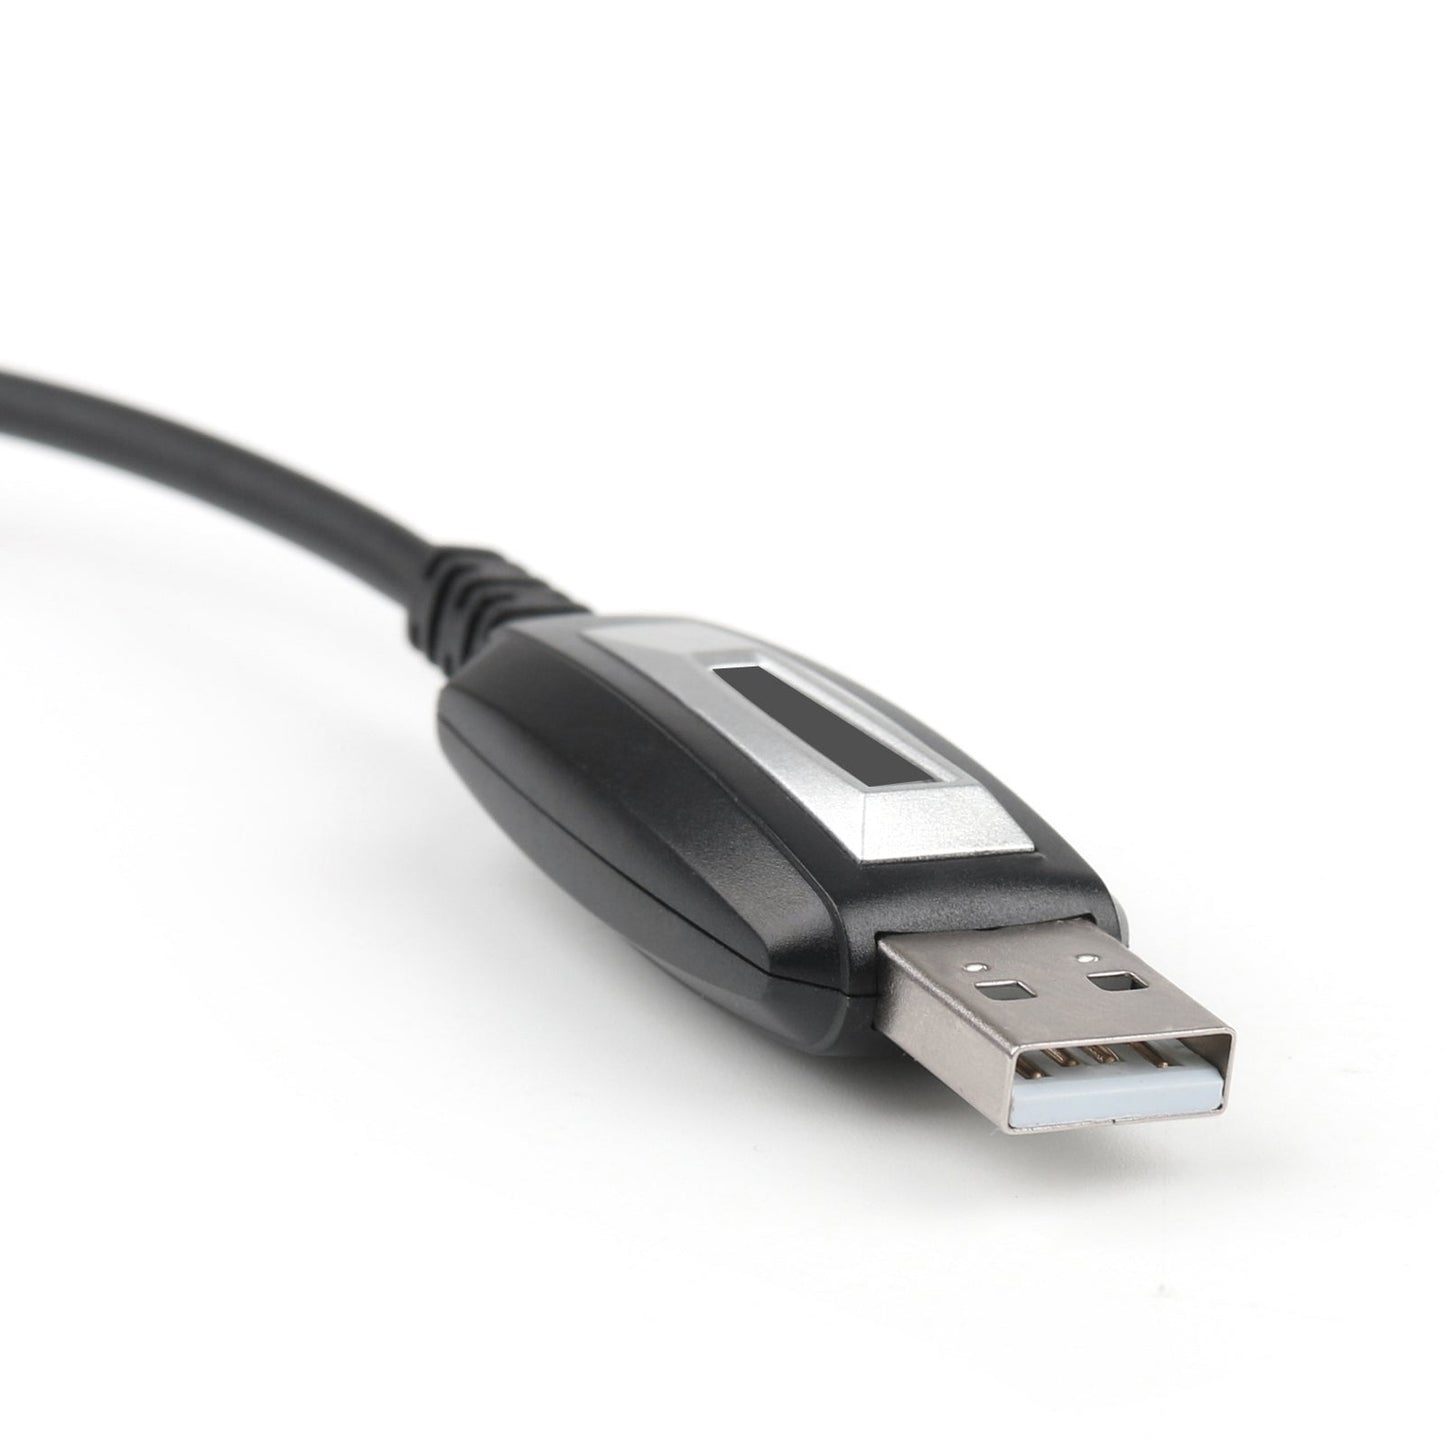 USB-Programmierkabel für TH-9800 Autoradio MIT CD-Software